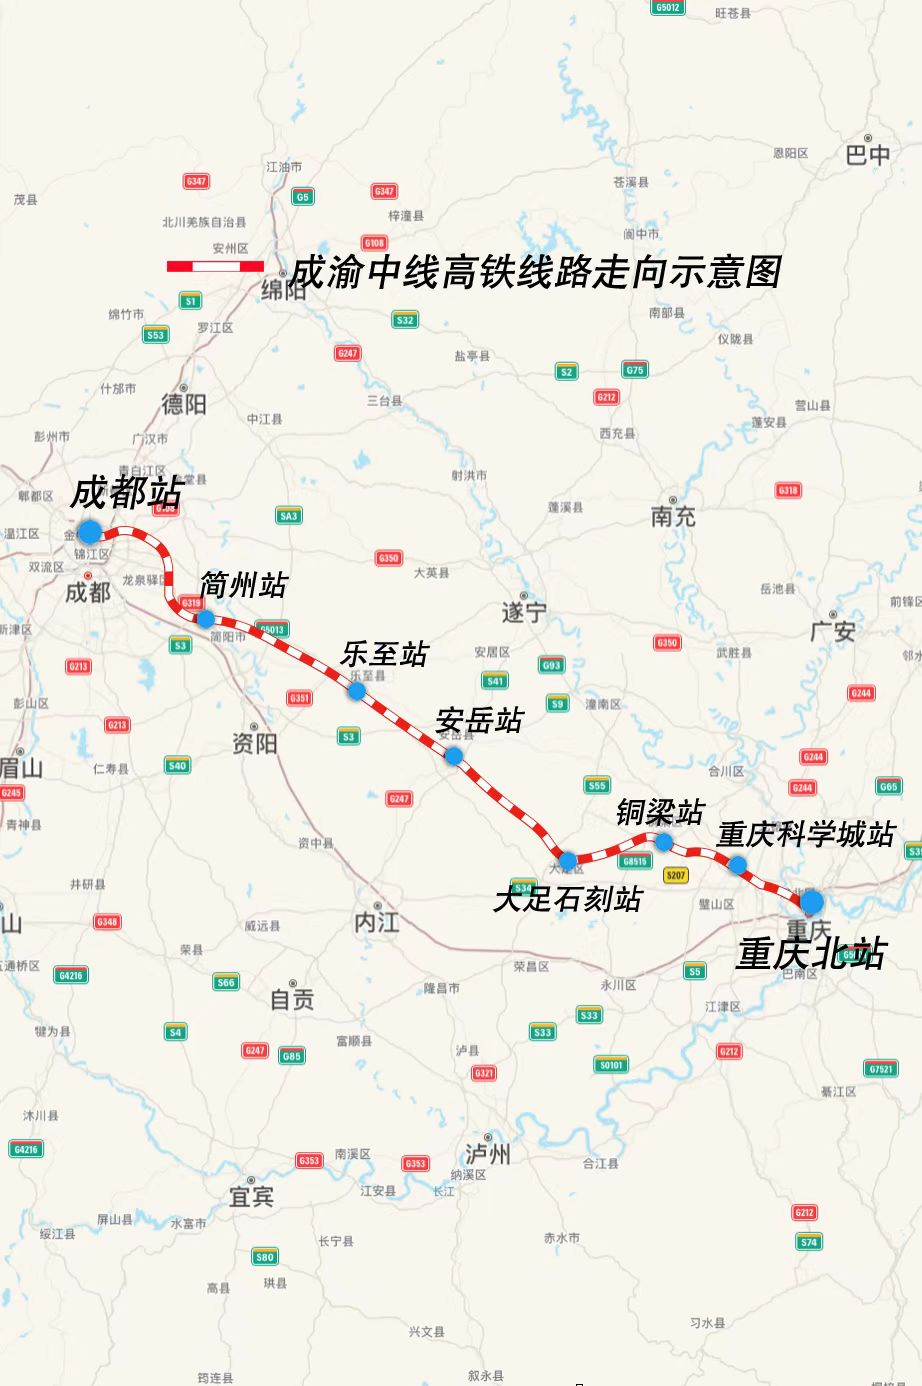 线路走向示意图。中国国家铁路集团有限公司供图